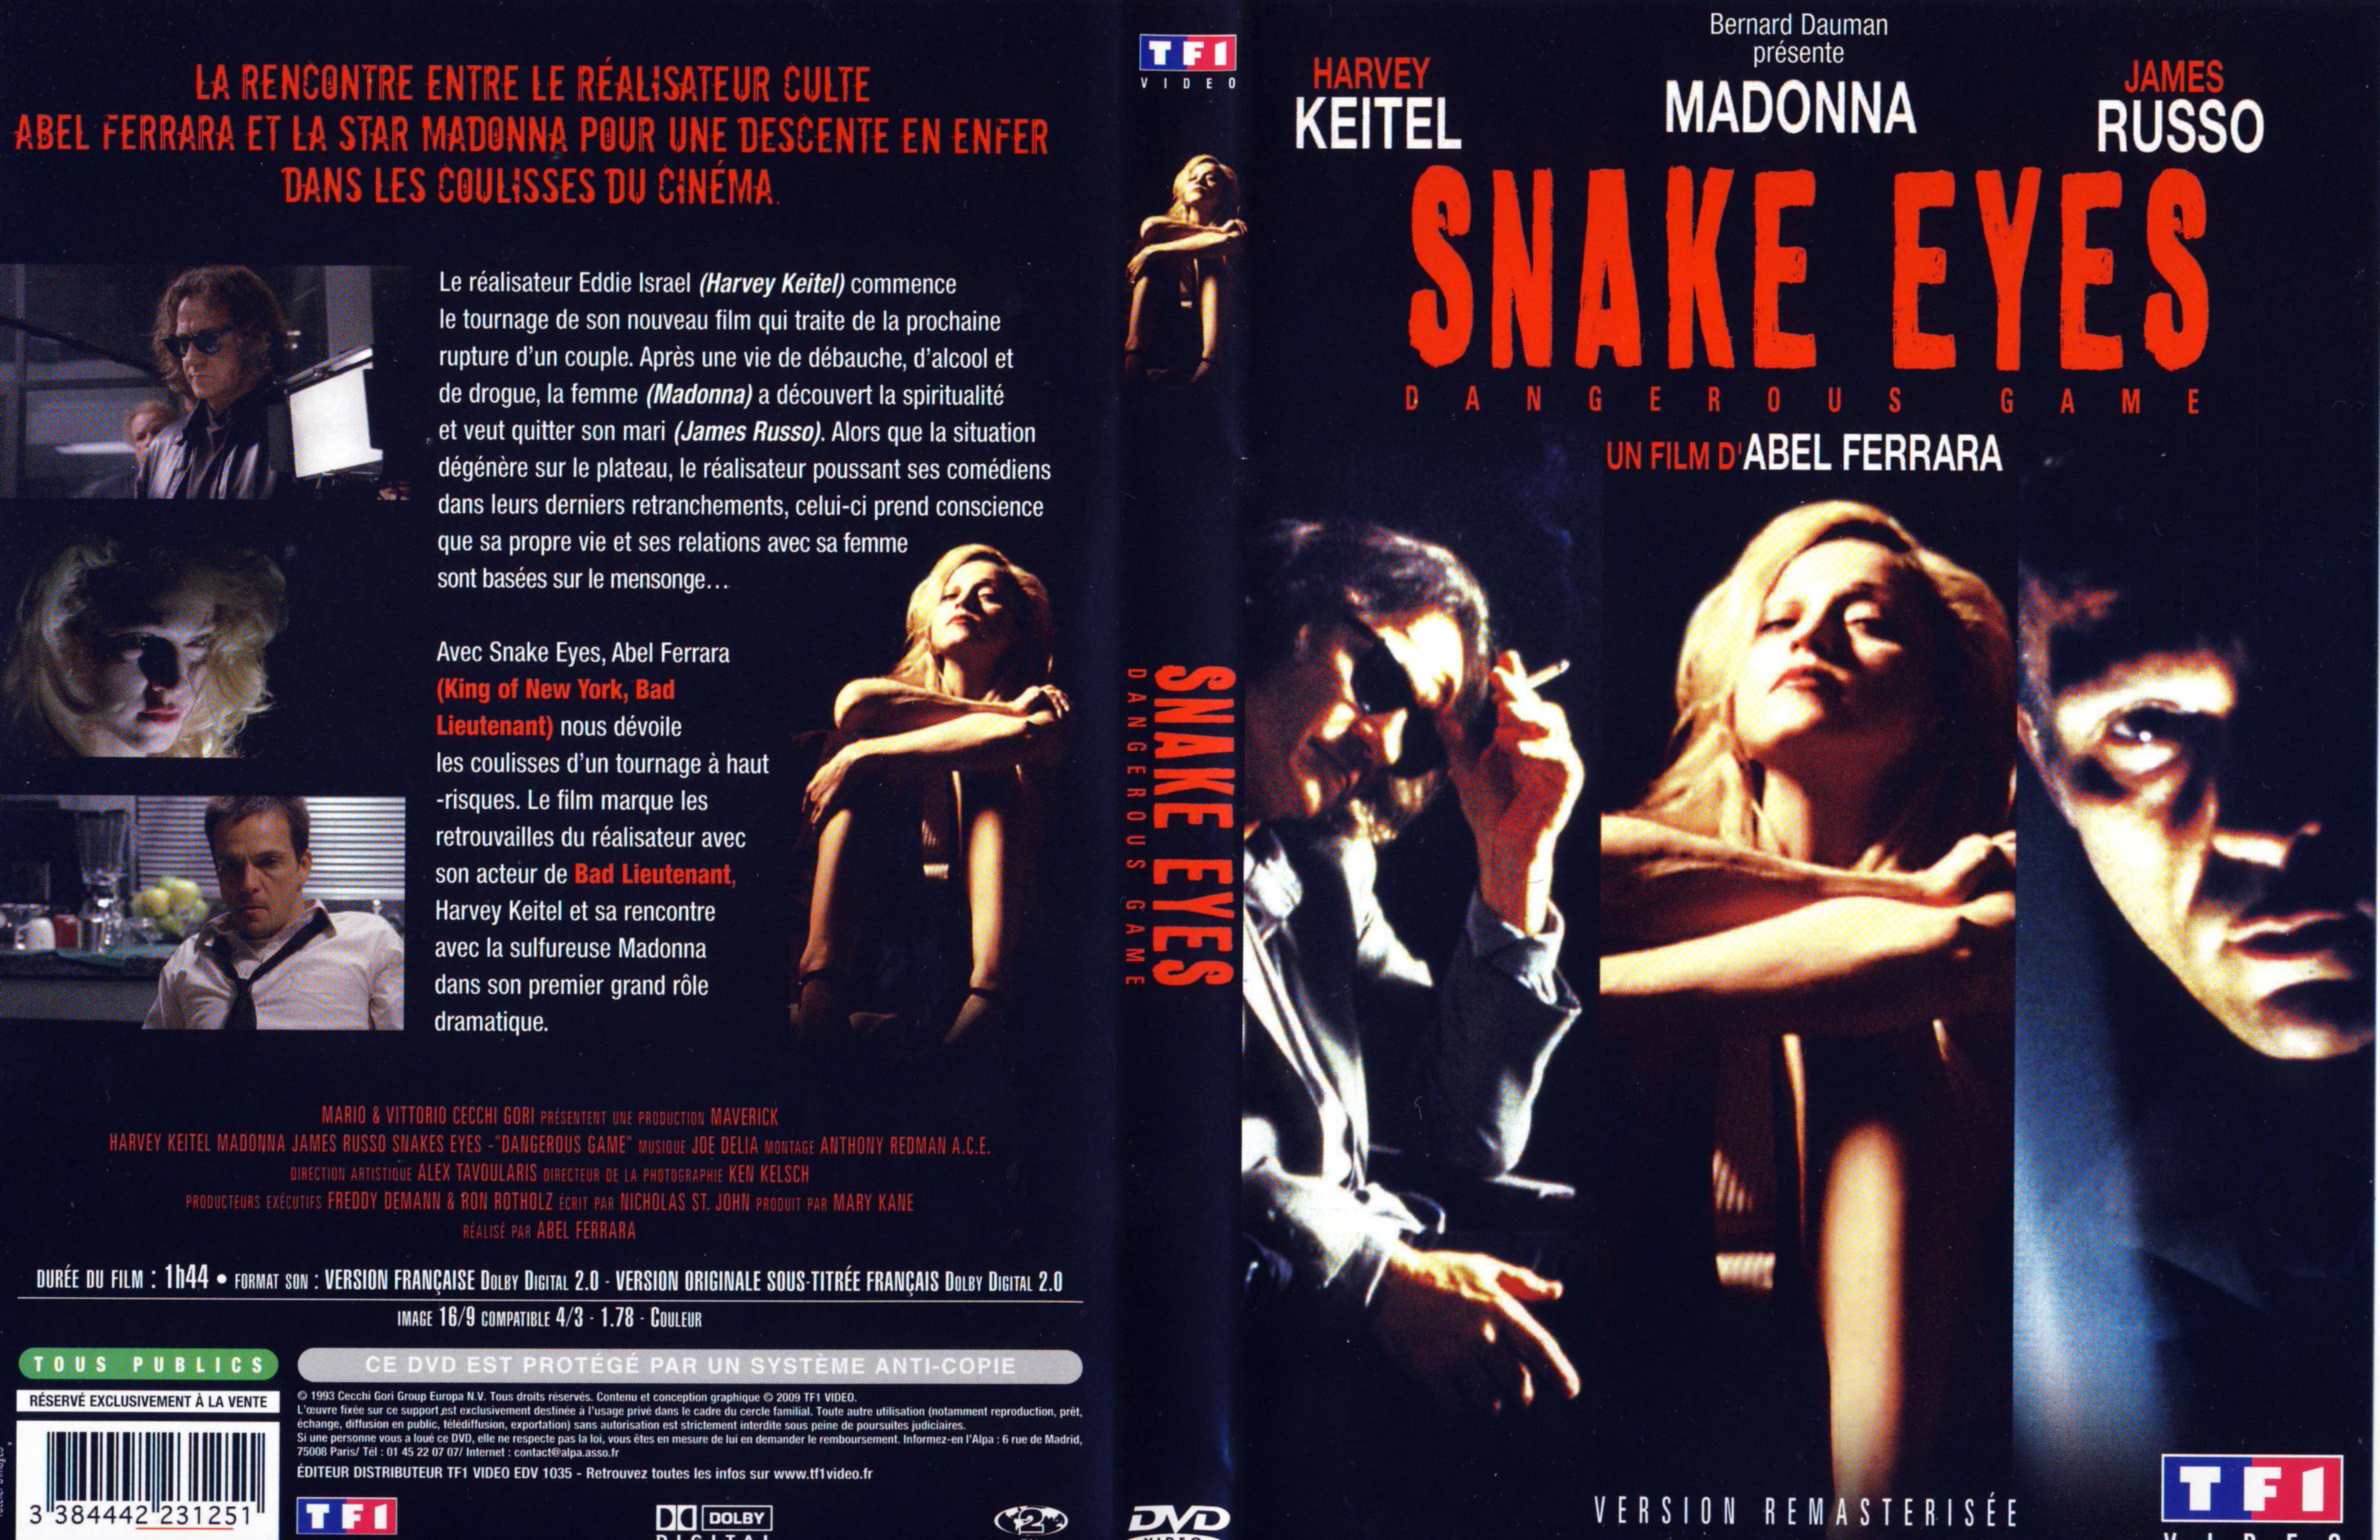 Jaquette DVD Snake eyes (Madonna) v2